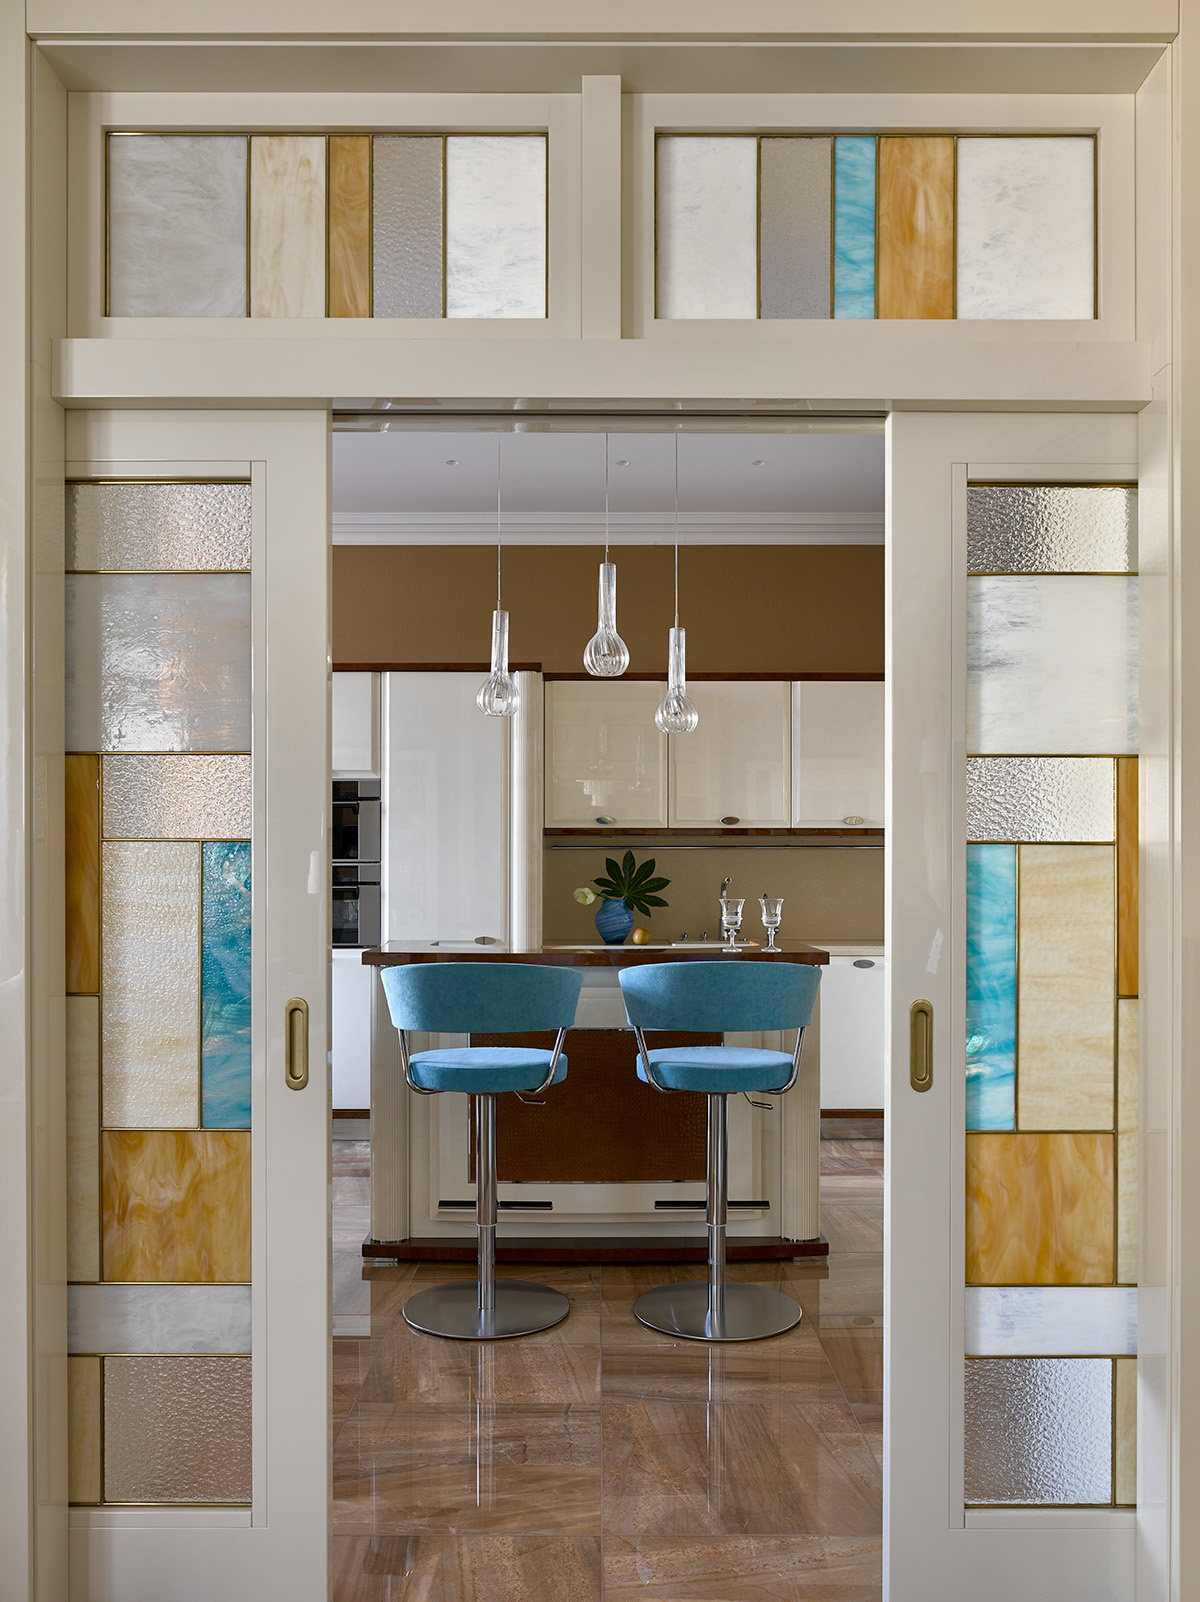 NTK nội thất đã lựa chọn cửa trượt để phân vùng không gian tiếp khách và không gian nấu nướng - ăn uống. Cửa ốp kính mờ xen kẽ những gam màu sang trọng, tạo sự liên kết với hai khu vực chức năng bằng màu sắc.